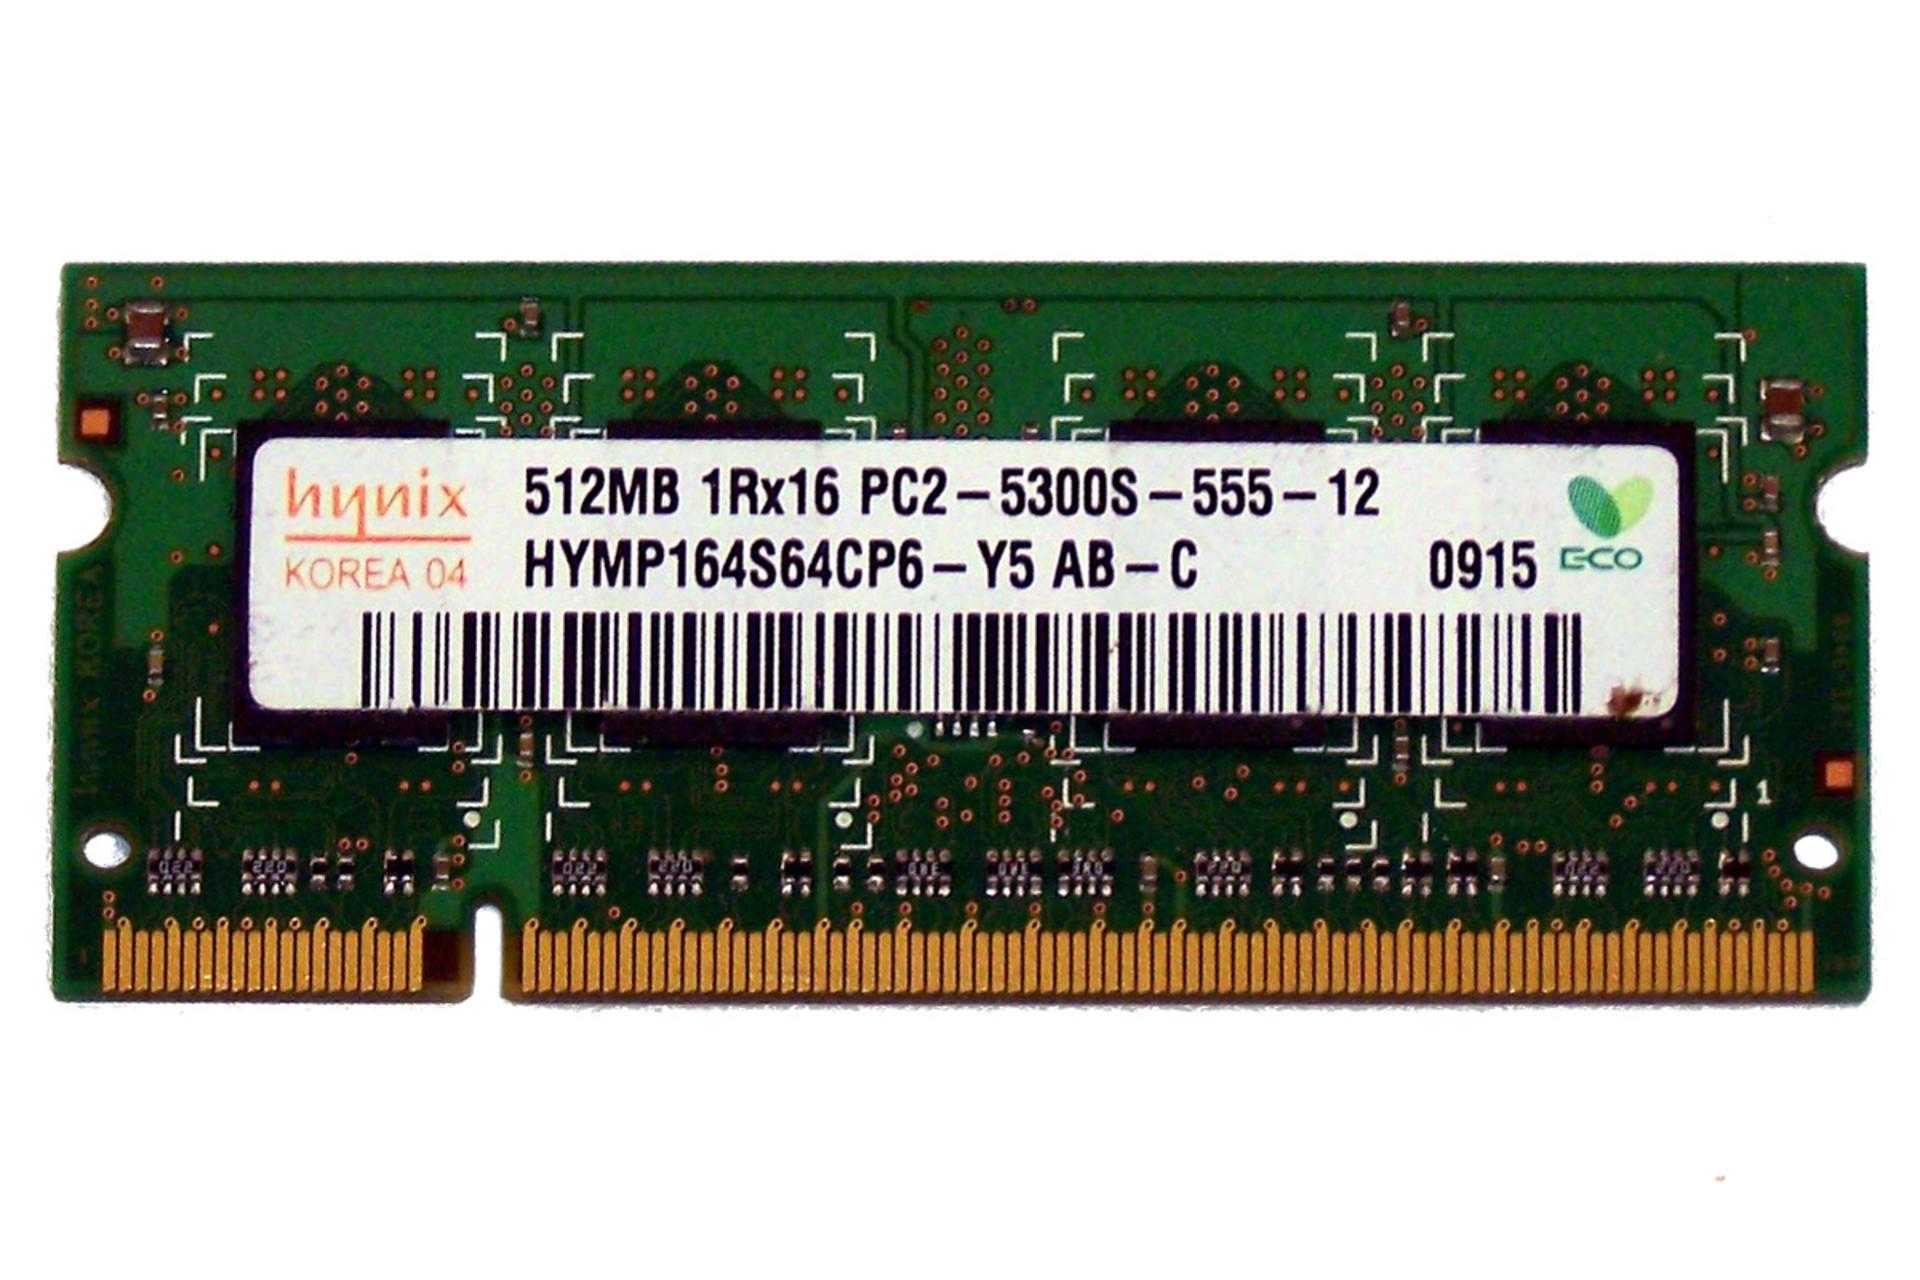 رم اس کی هاینیکس HYMP164S64CP6-Y5 ظرفیت 512 مگابایت از نوع DDR2-667